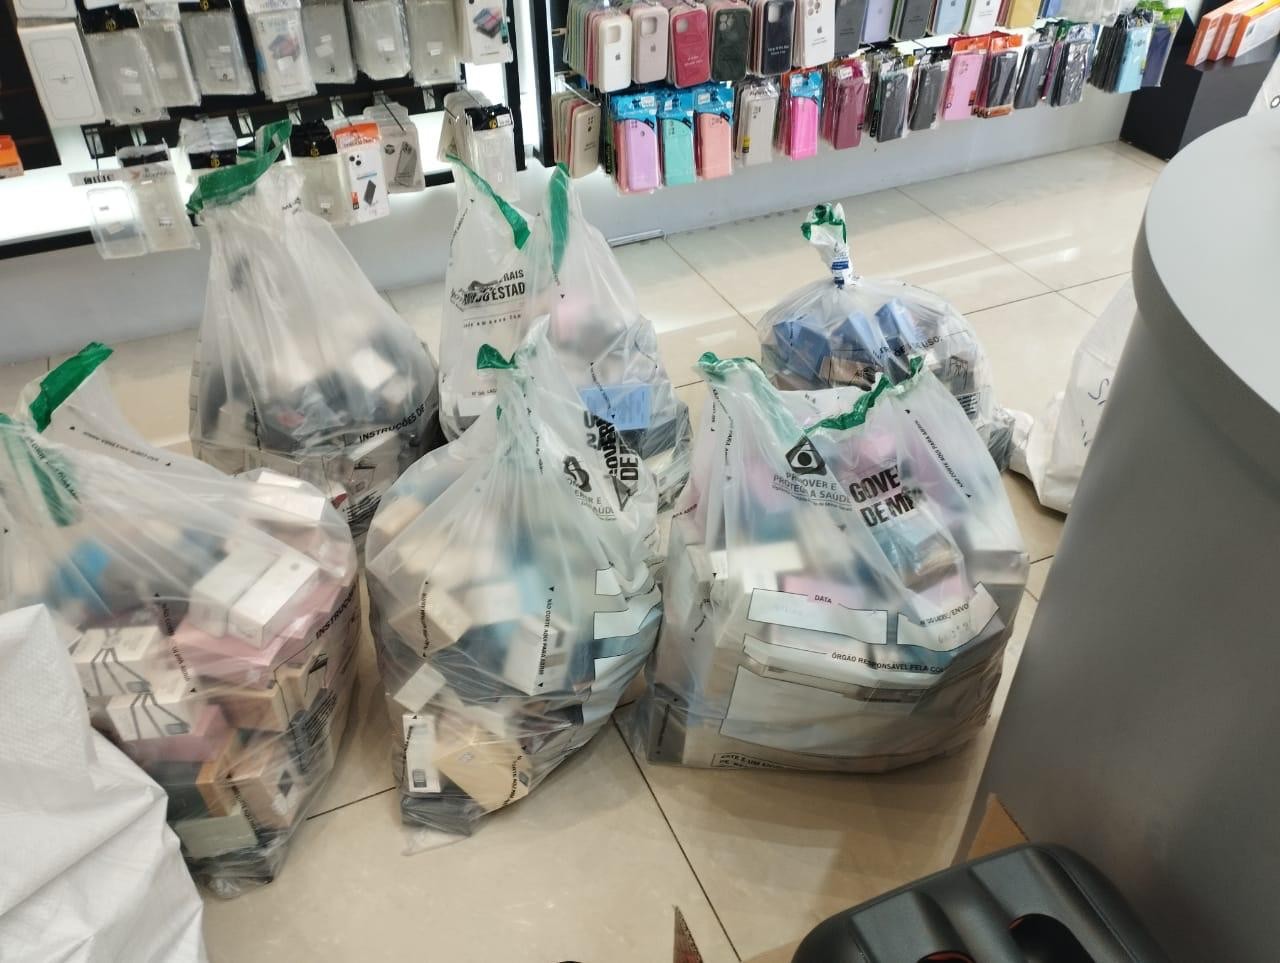 Eletrônicos e perfumes estimados em R$ 600 mil são retidos durante operação contra importação irregular de mercadorias em Pará de Minas 